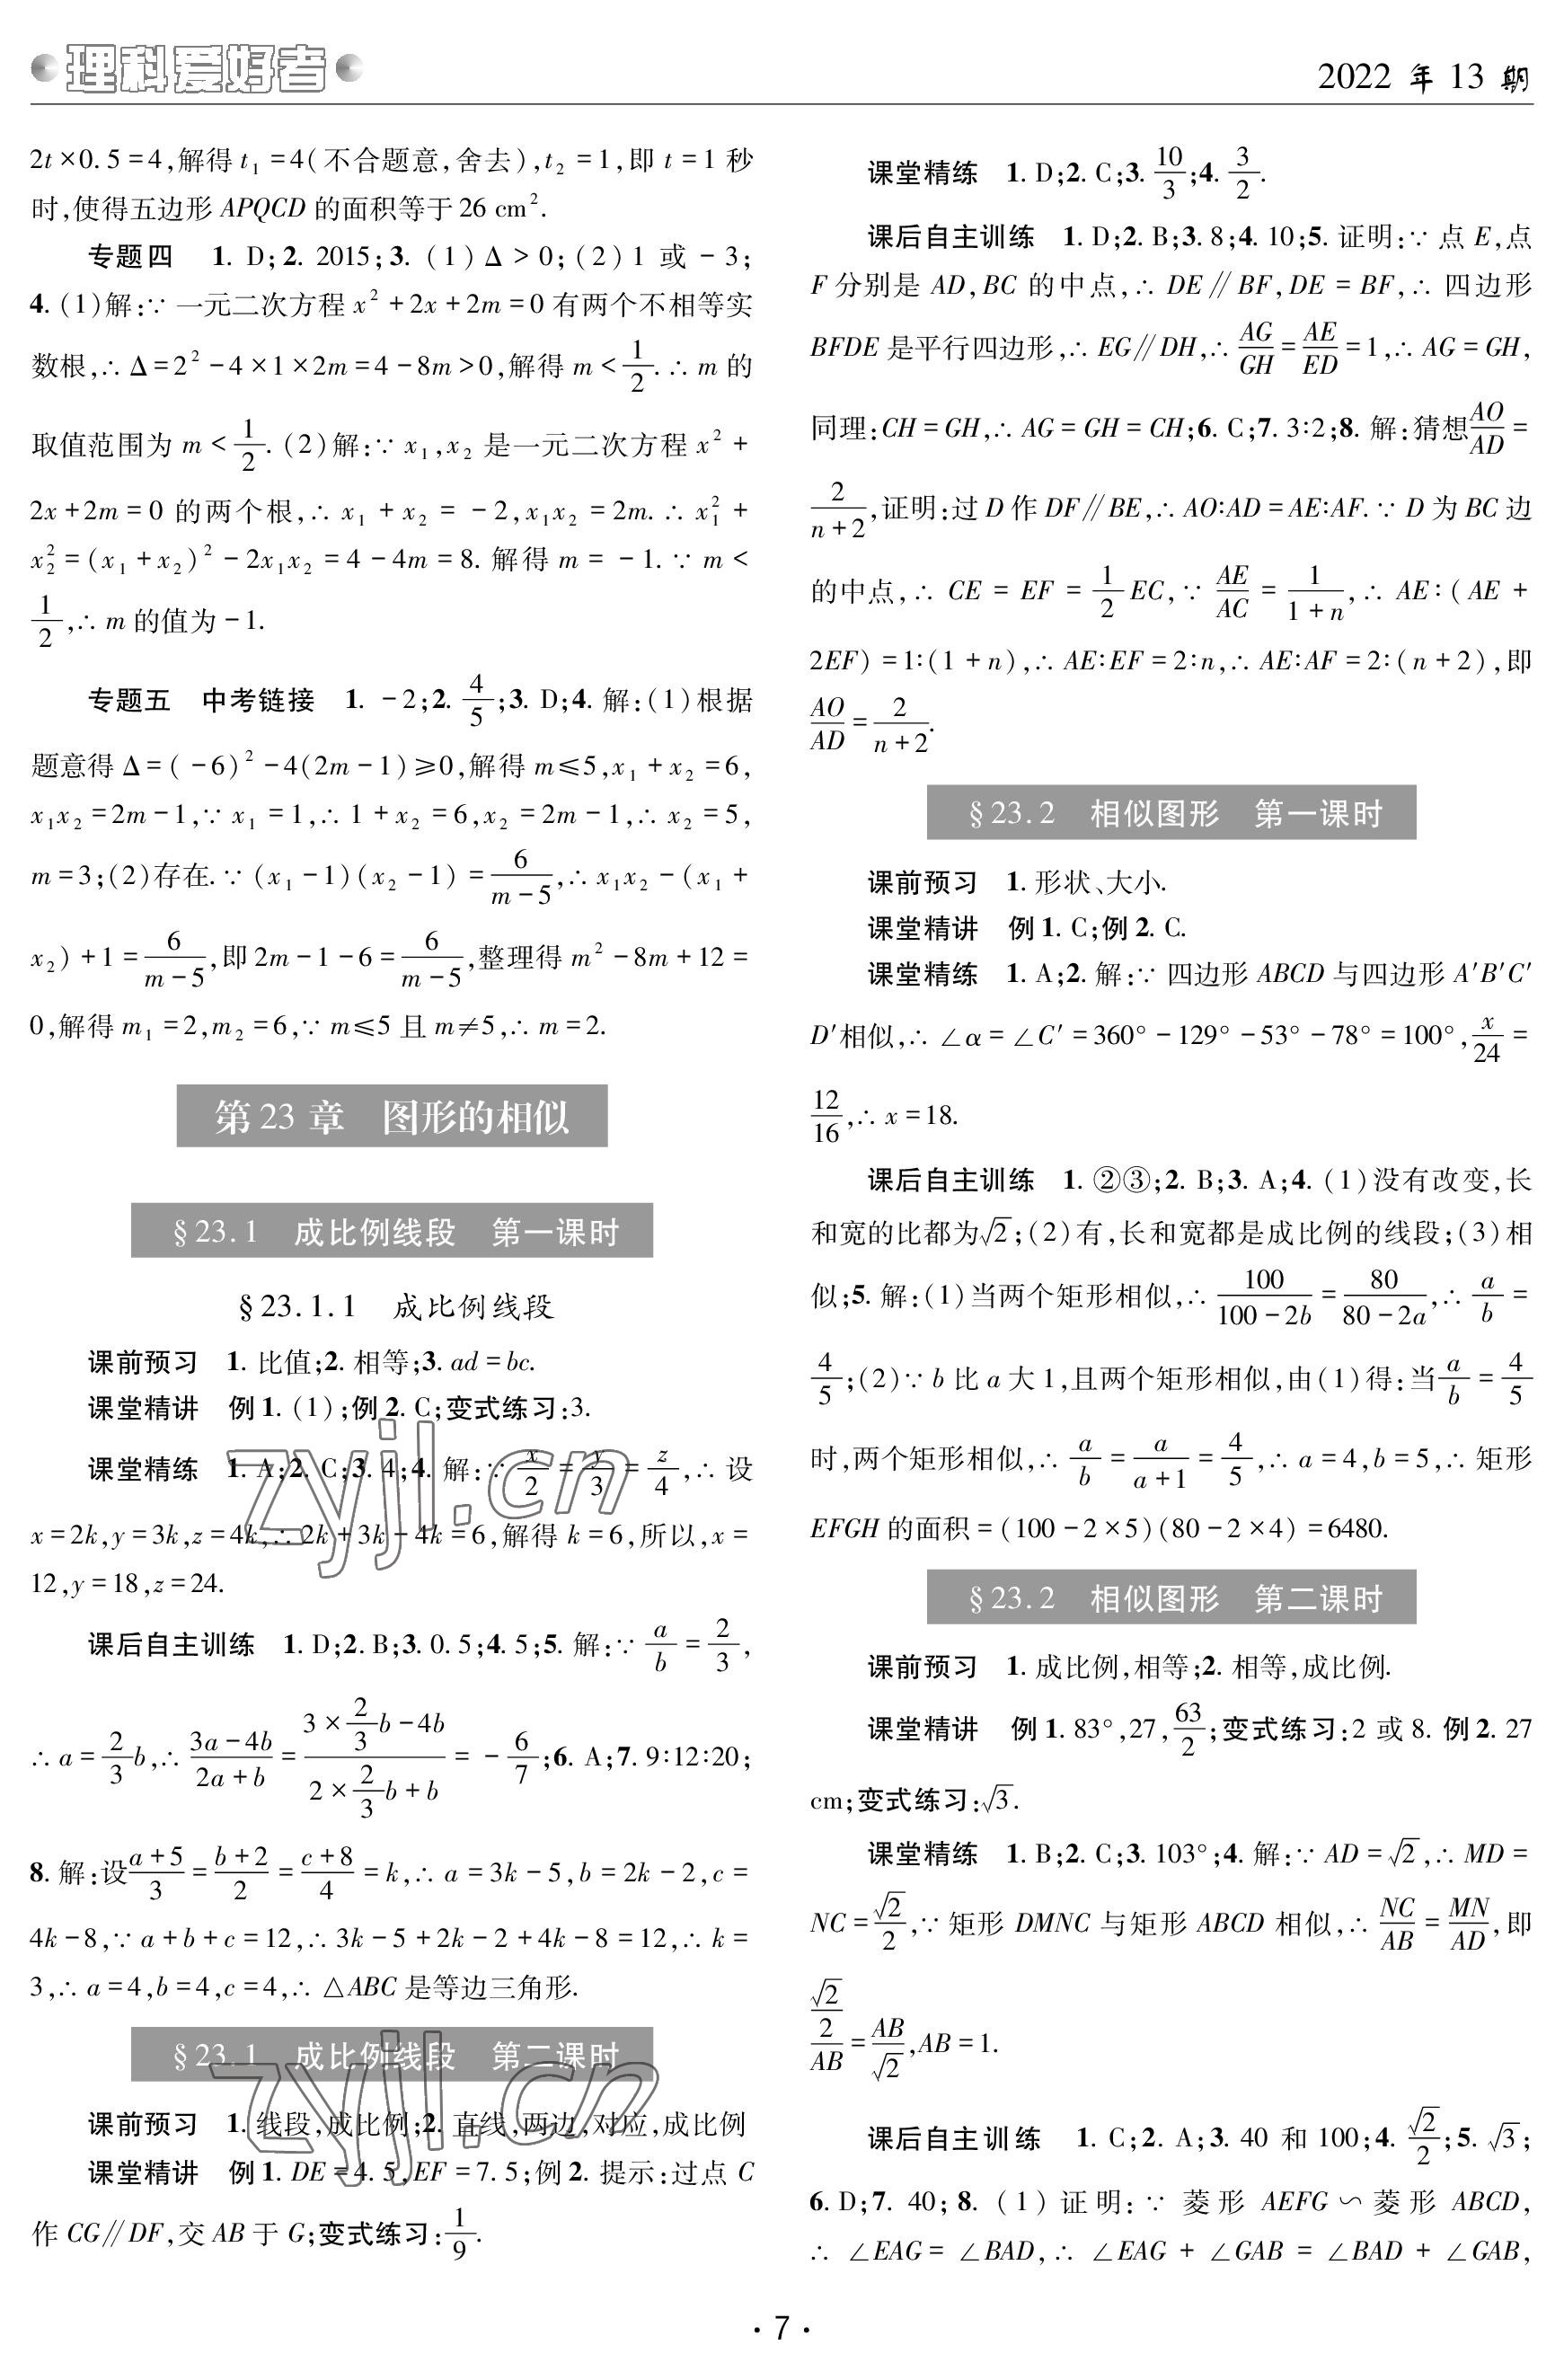 2022年理科爱好者九年级数学全一册华师大版第13期 参考答案第6页